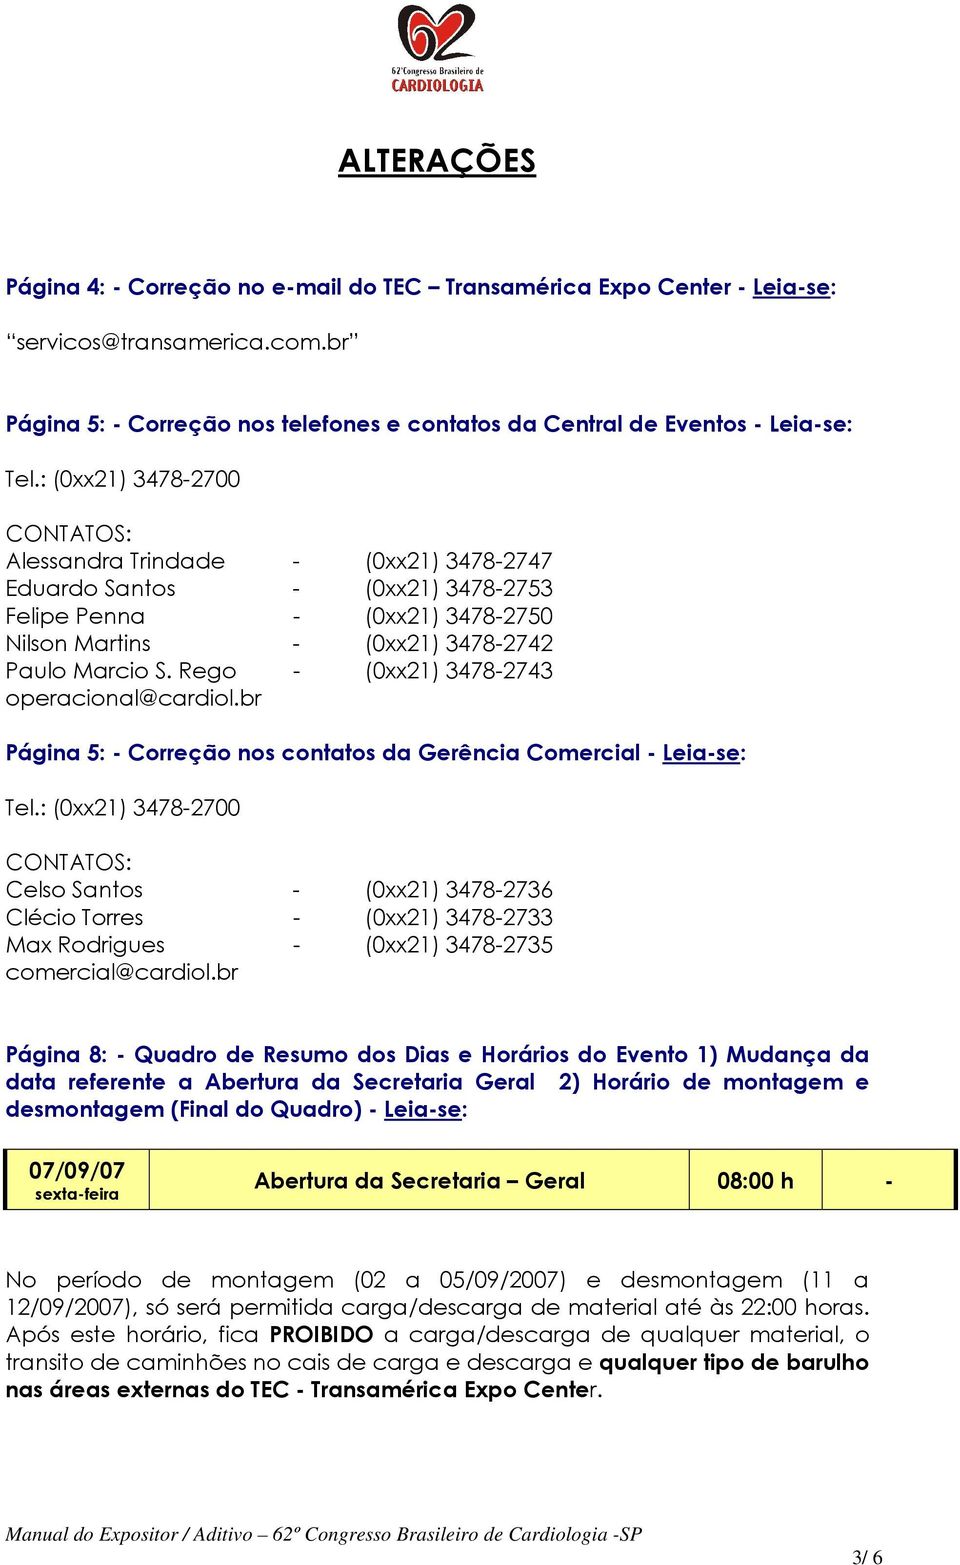 Rego - (0xx21) 3478-2743 operacional@cardiol.br Página 5: - Correção nos contatos da Gerência Comercial - Leia-se: Tel.